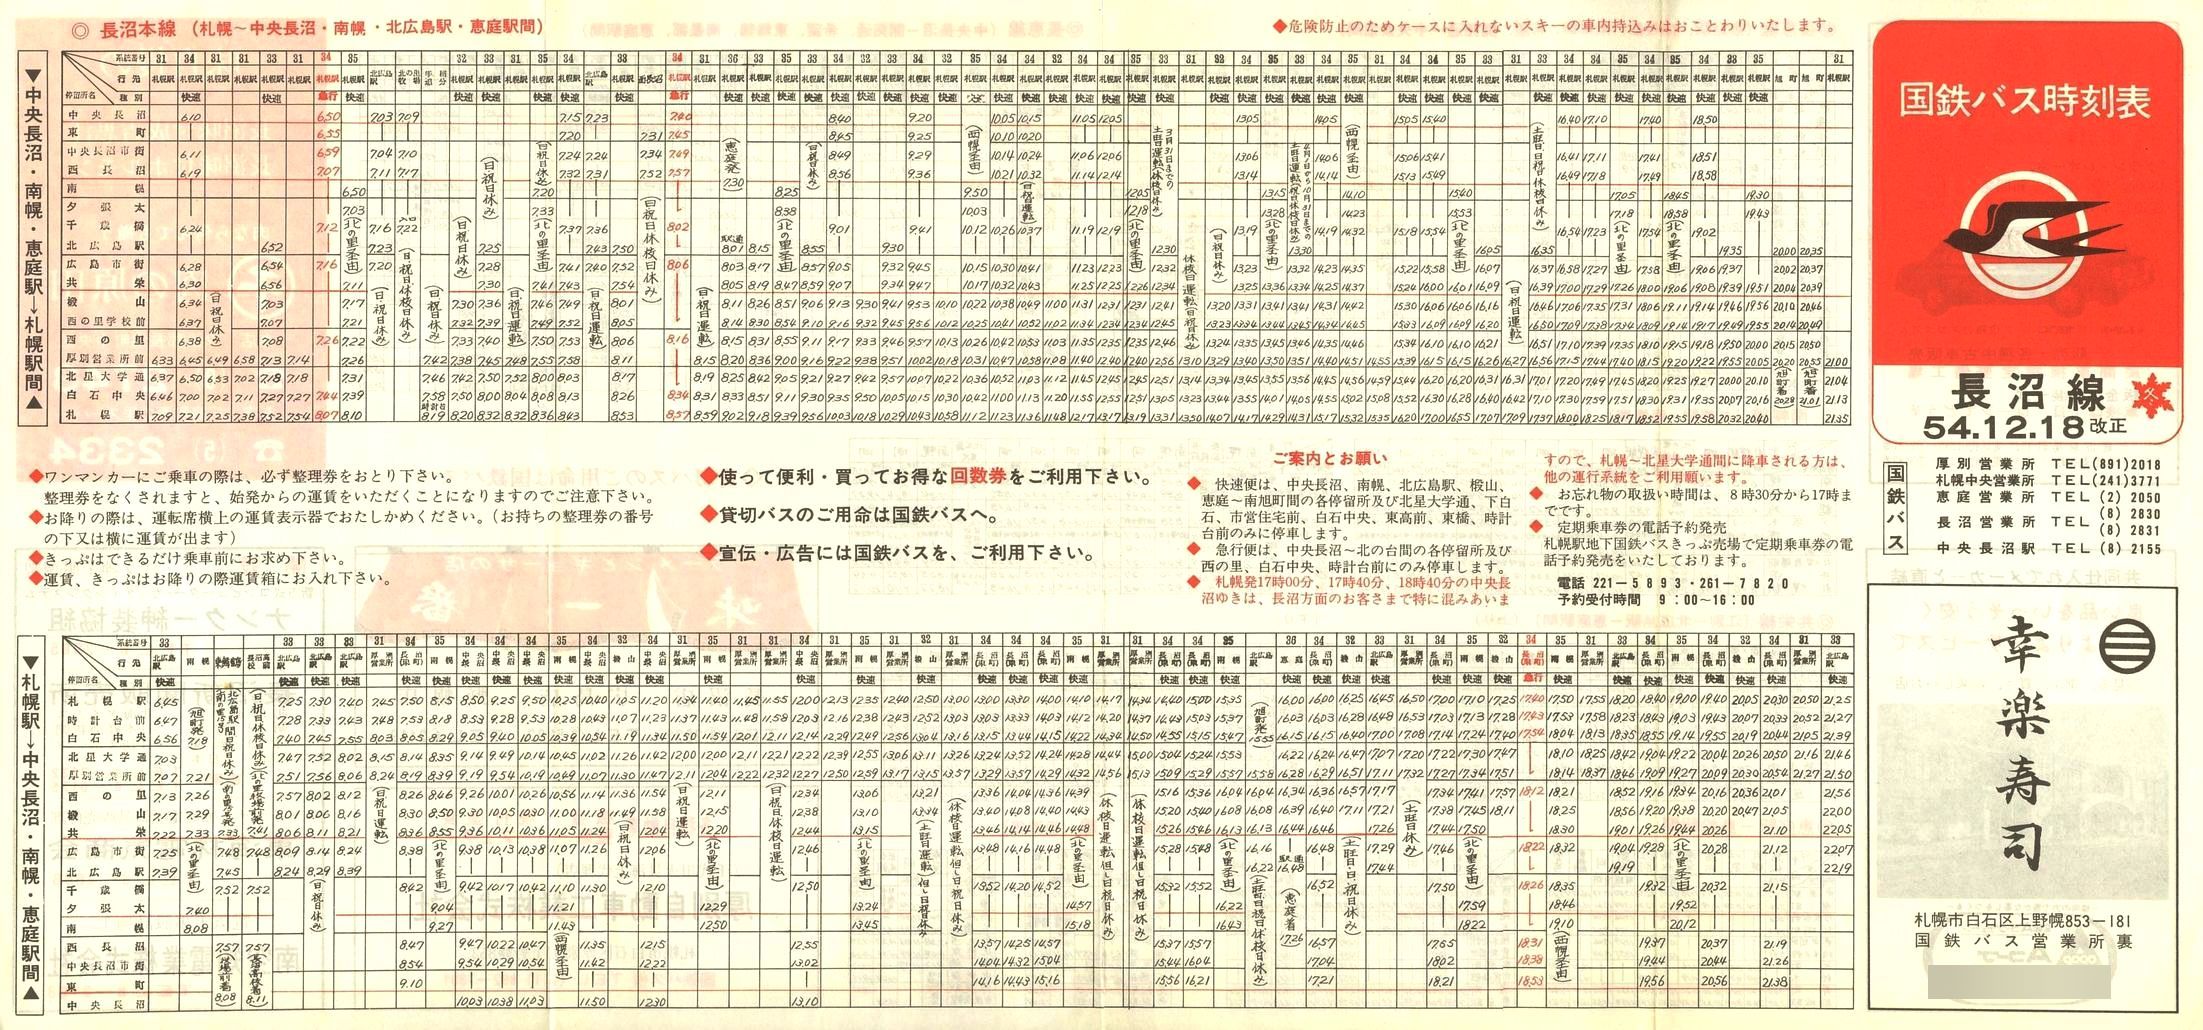 1979-12-18改正_国鉄バス_長沼線時刻表表面